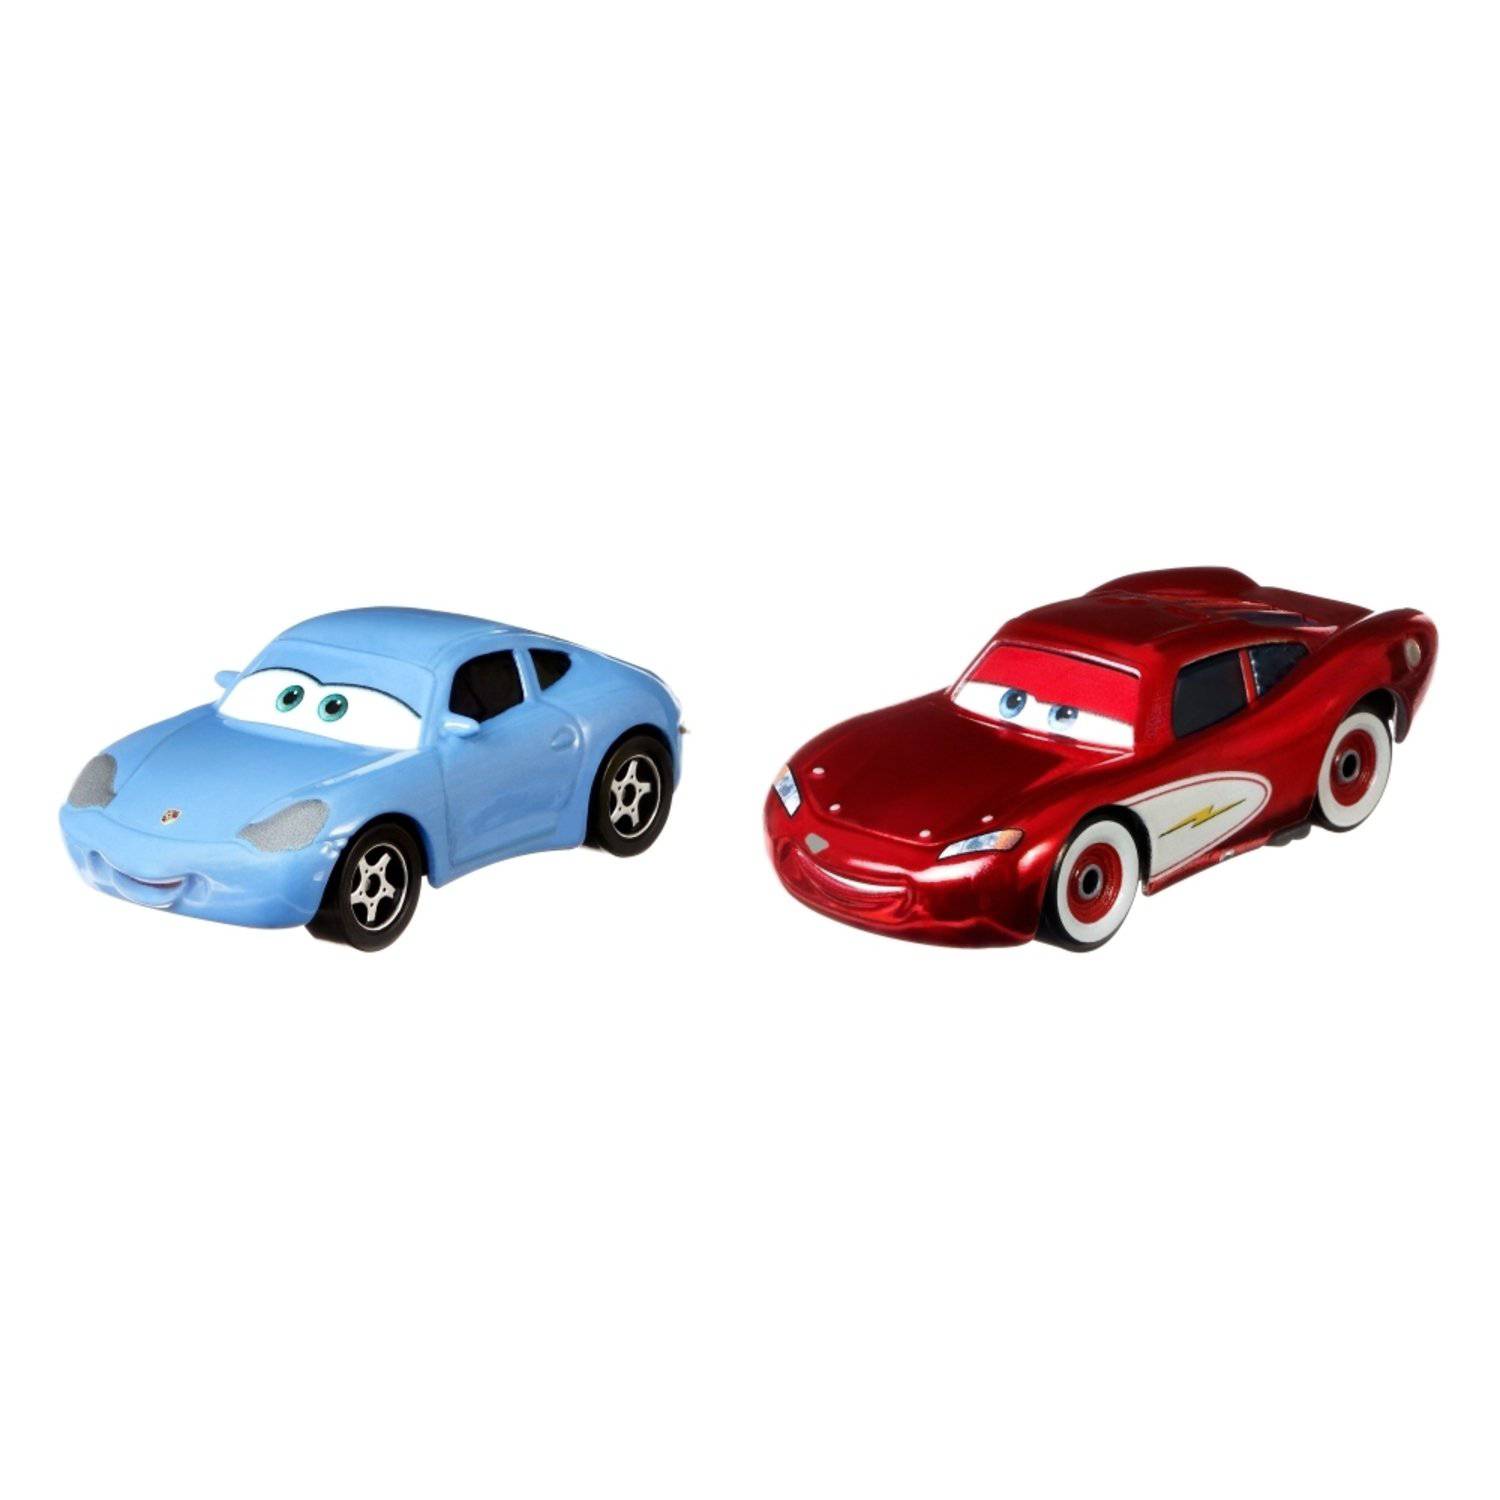 Cars de Disney y Pixar Paquete de 2 Personajes